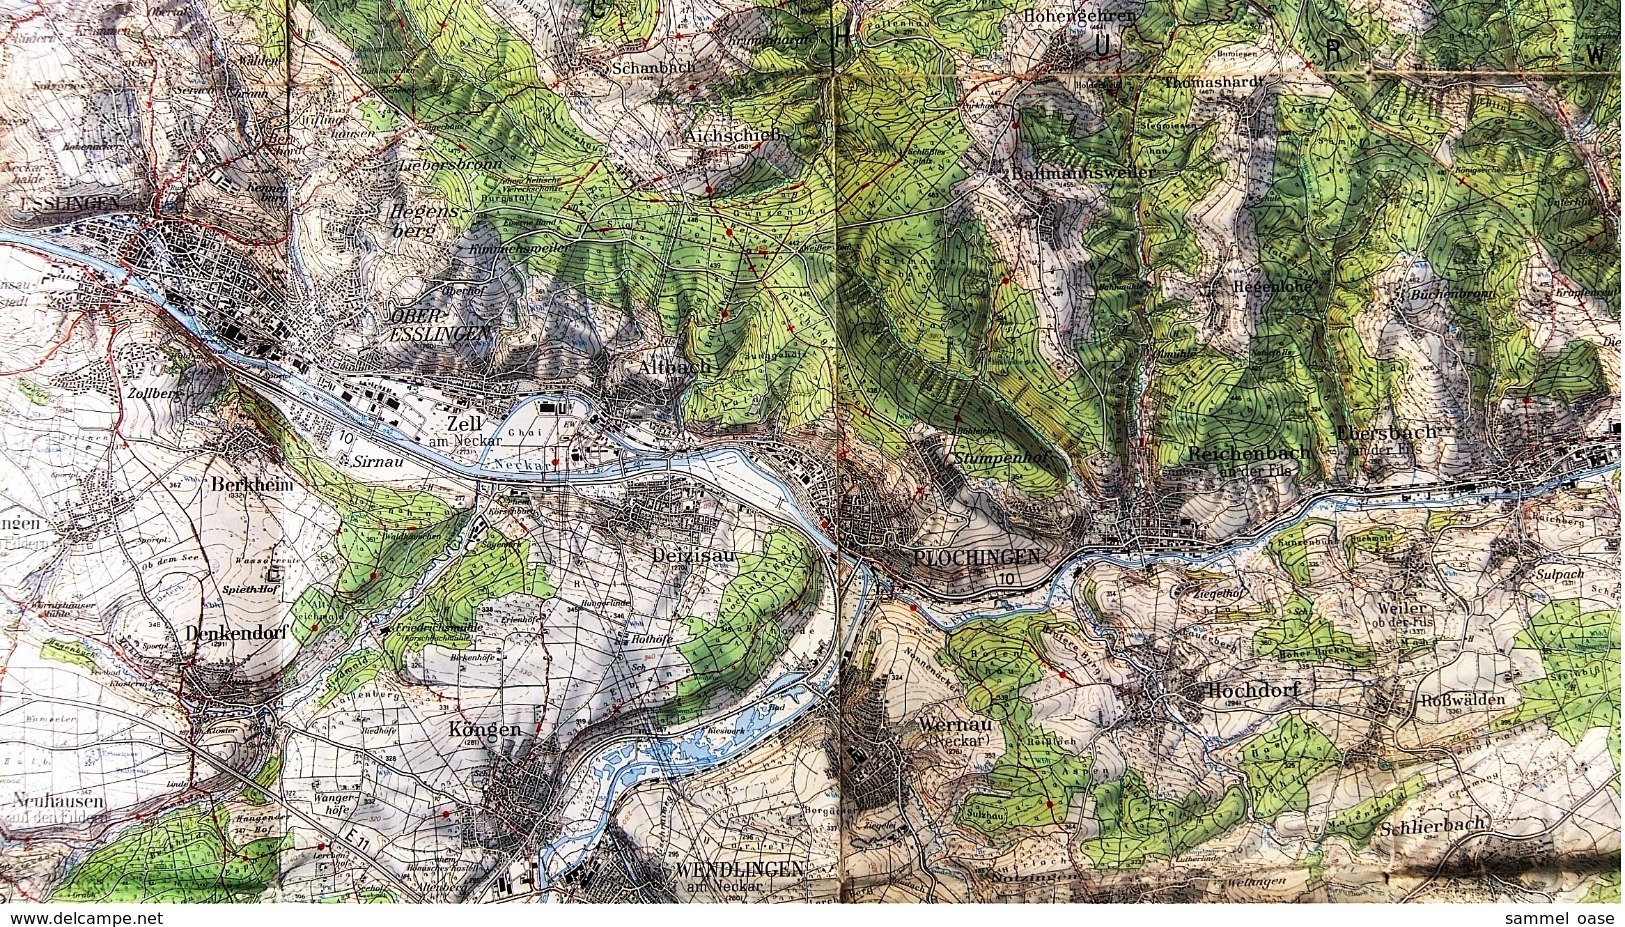 Topographische Karte  - Stuttgart Und Umgebung  -  Ausgabe Mit Wanderwegen  -  Von 1968 - Landkarten